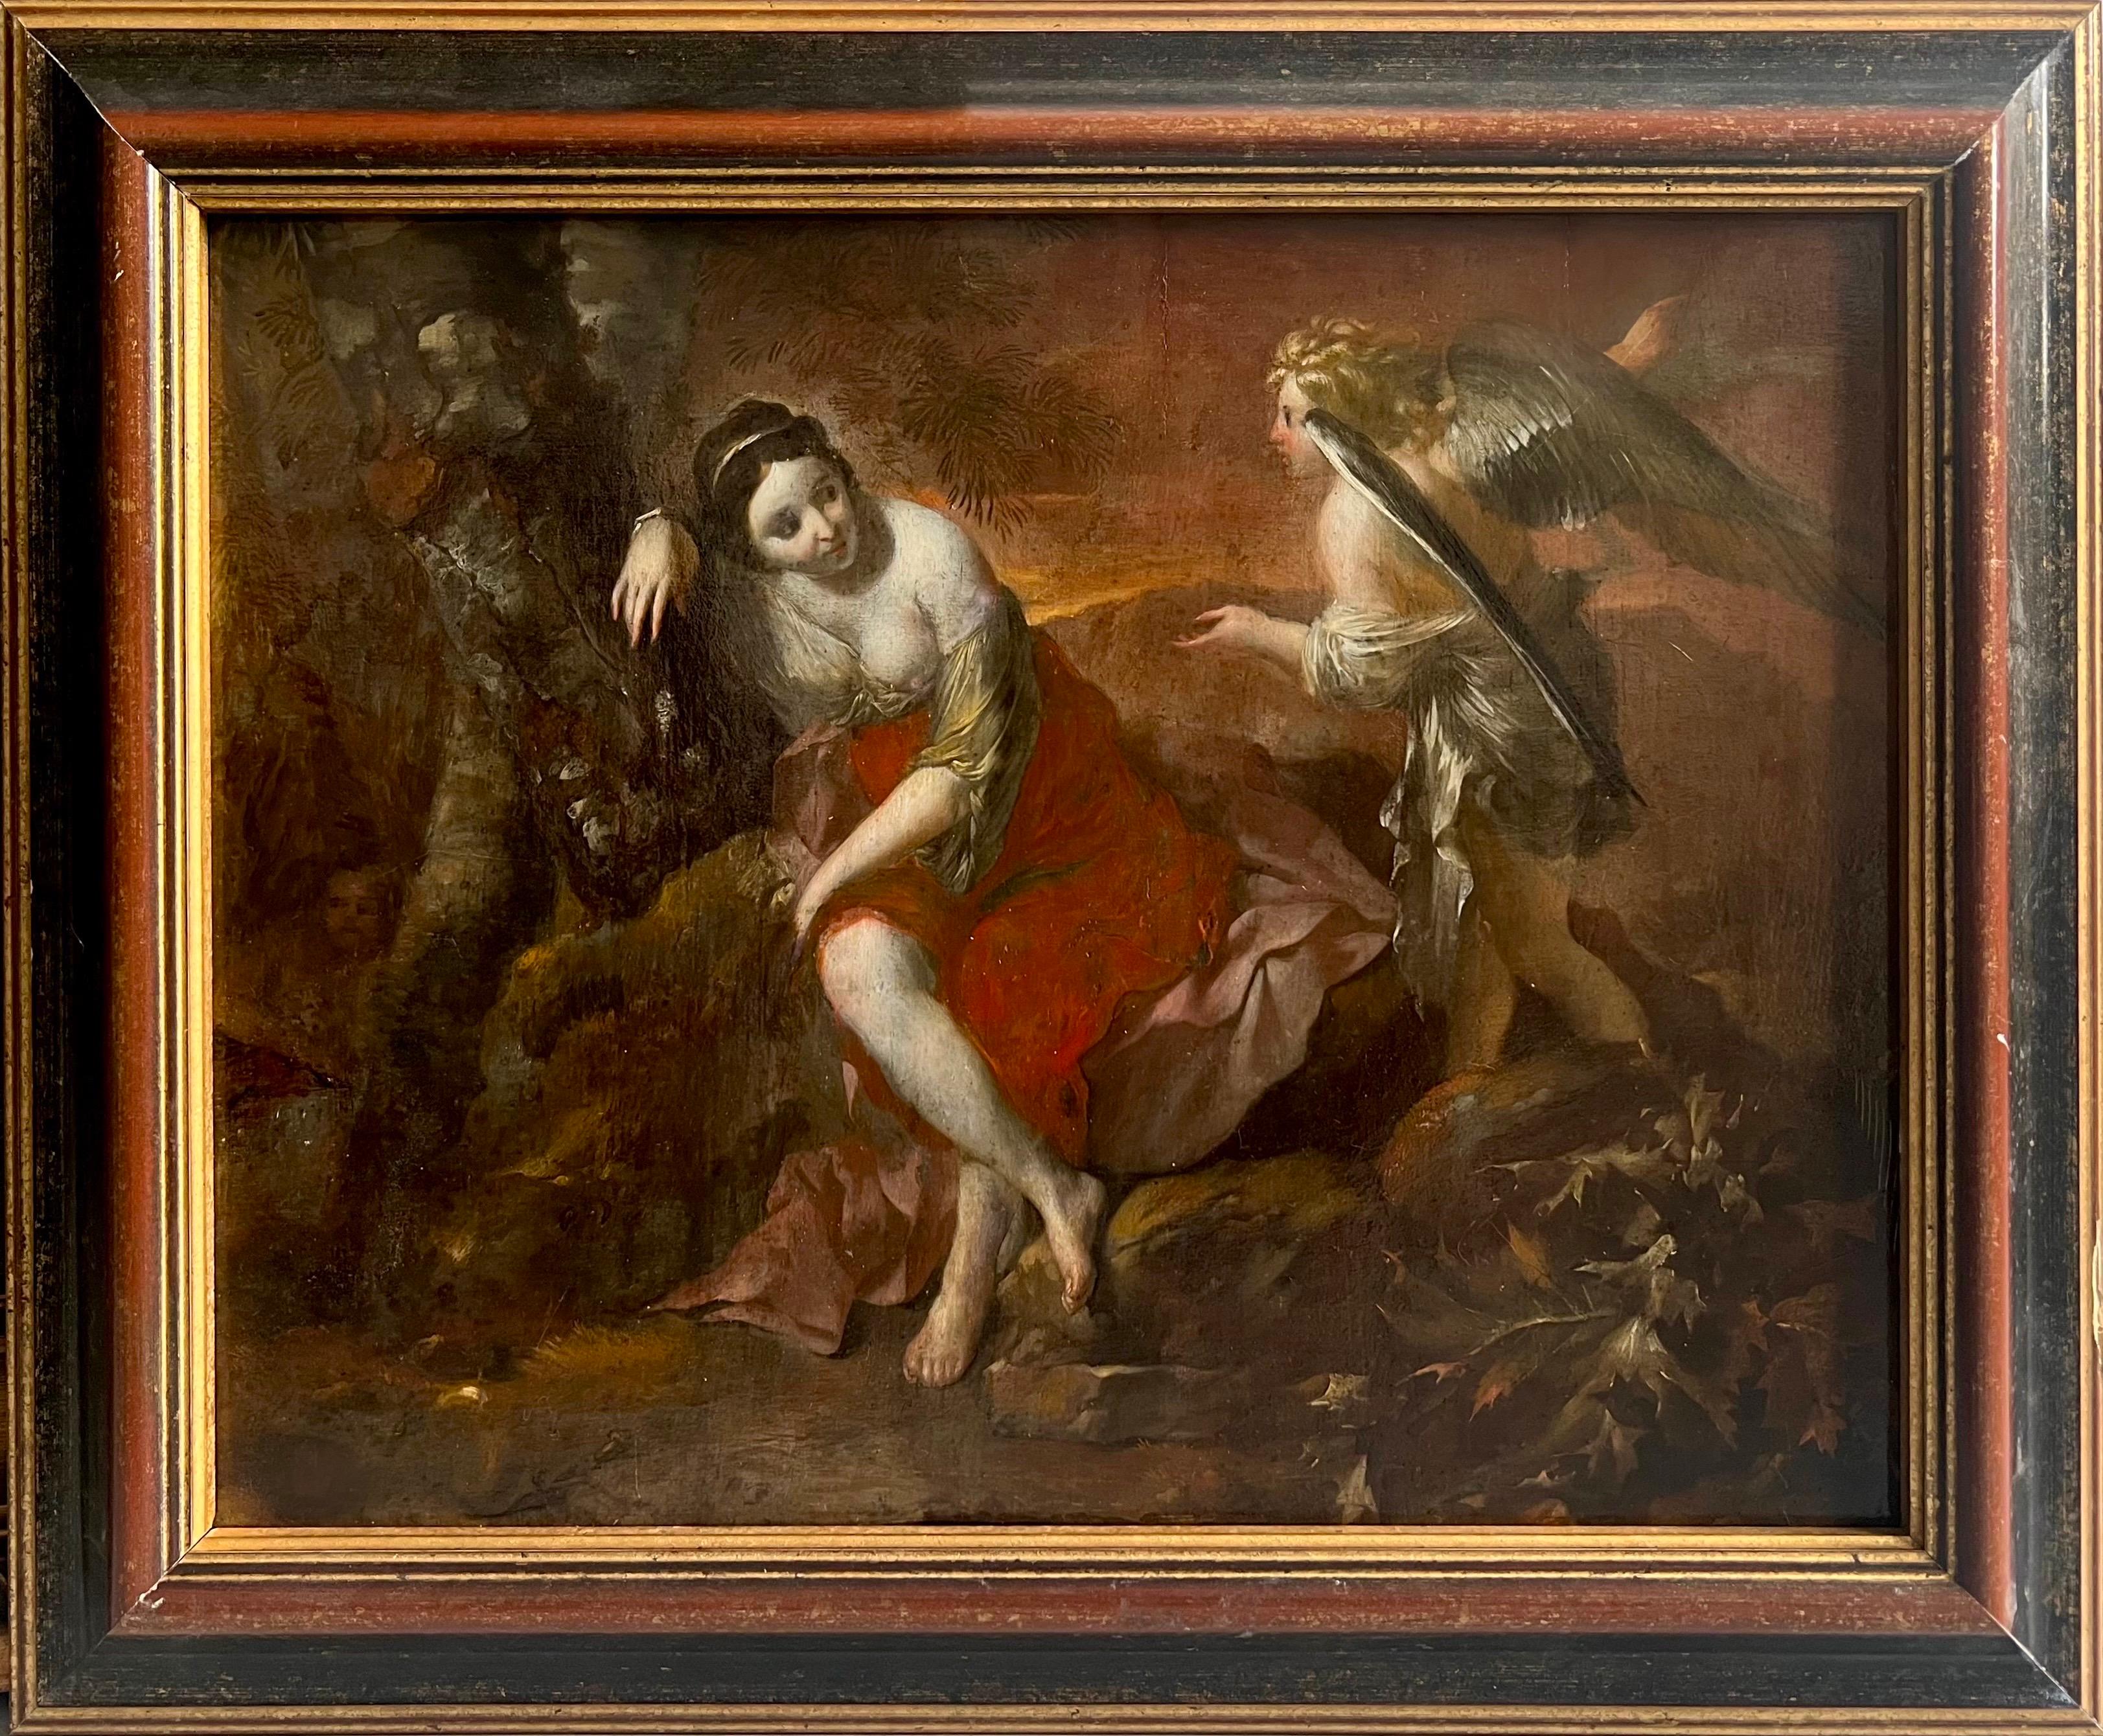 Adam de Colonia Figurative Painting – Religiöser alter Meister des 17. Jahrhunderts – Hagar und der Engel